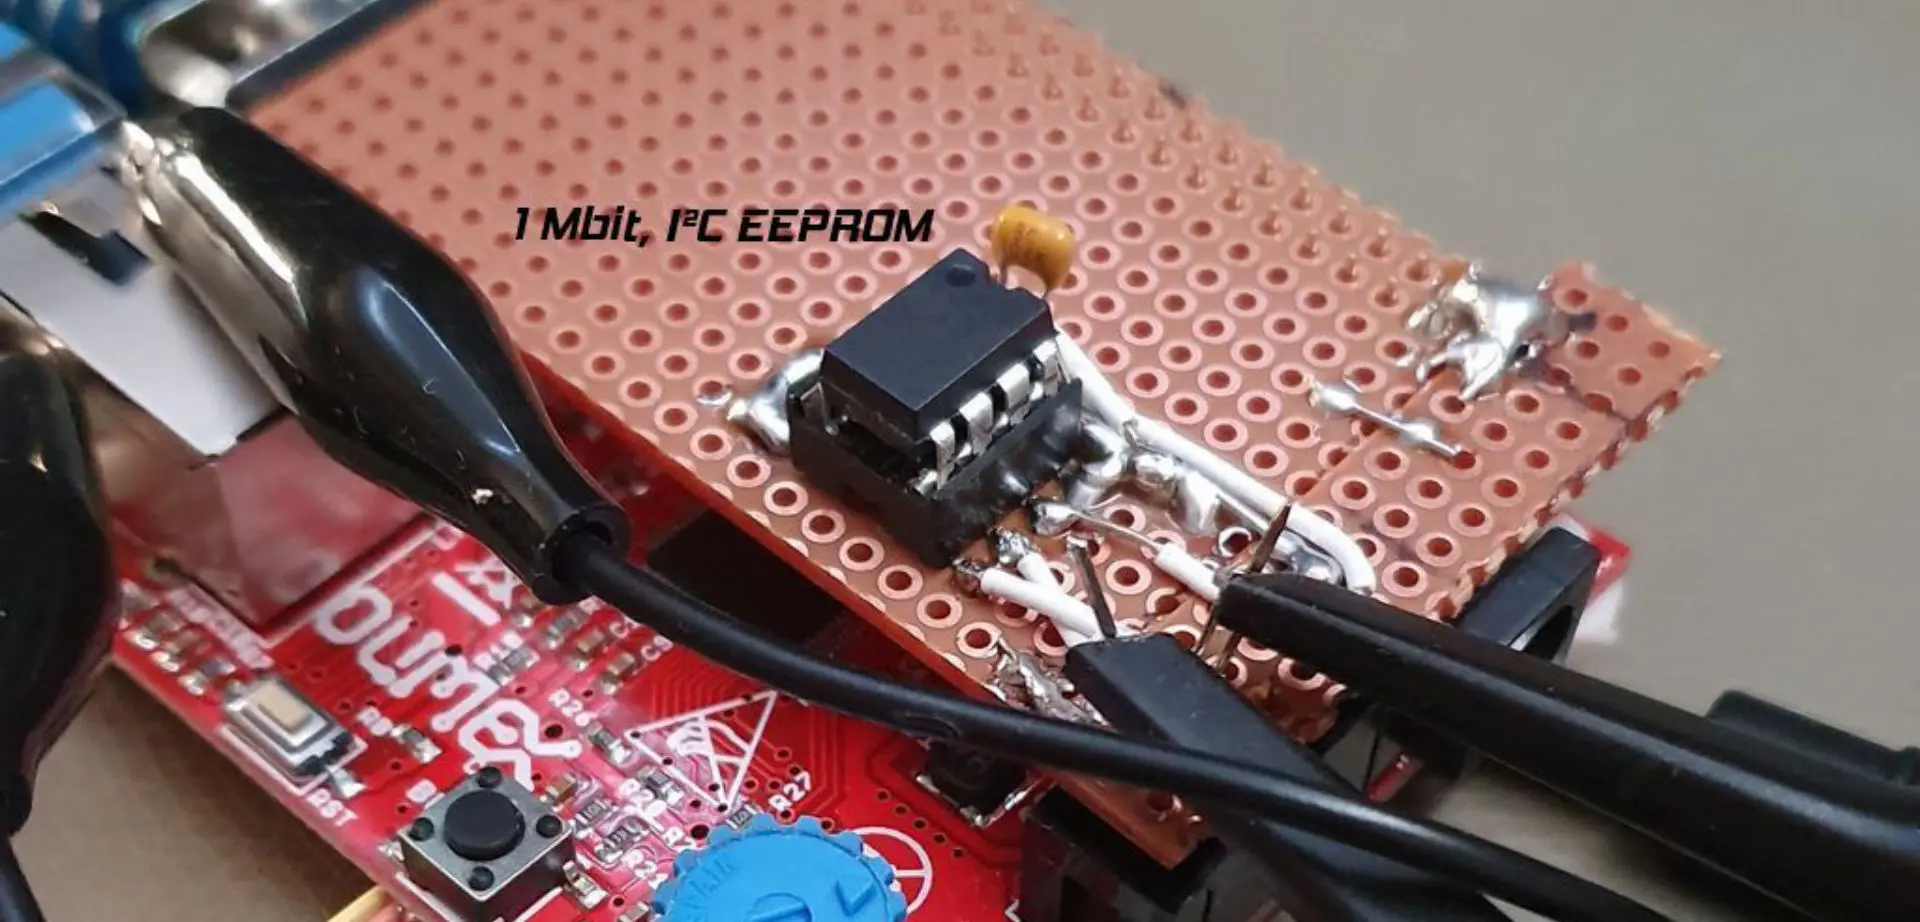 Aufsteck-board mit 1 MBit EEPROM